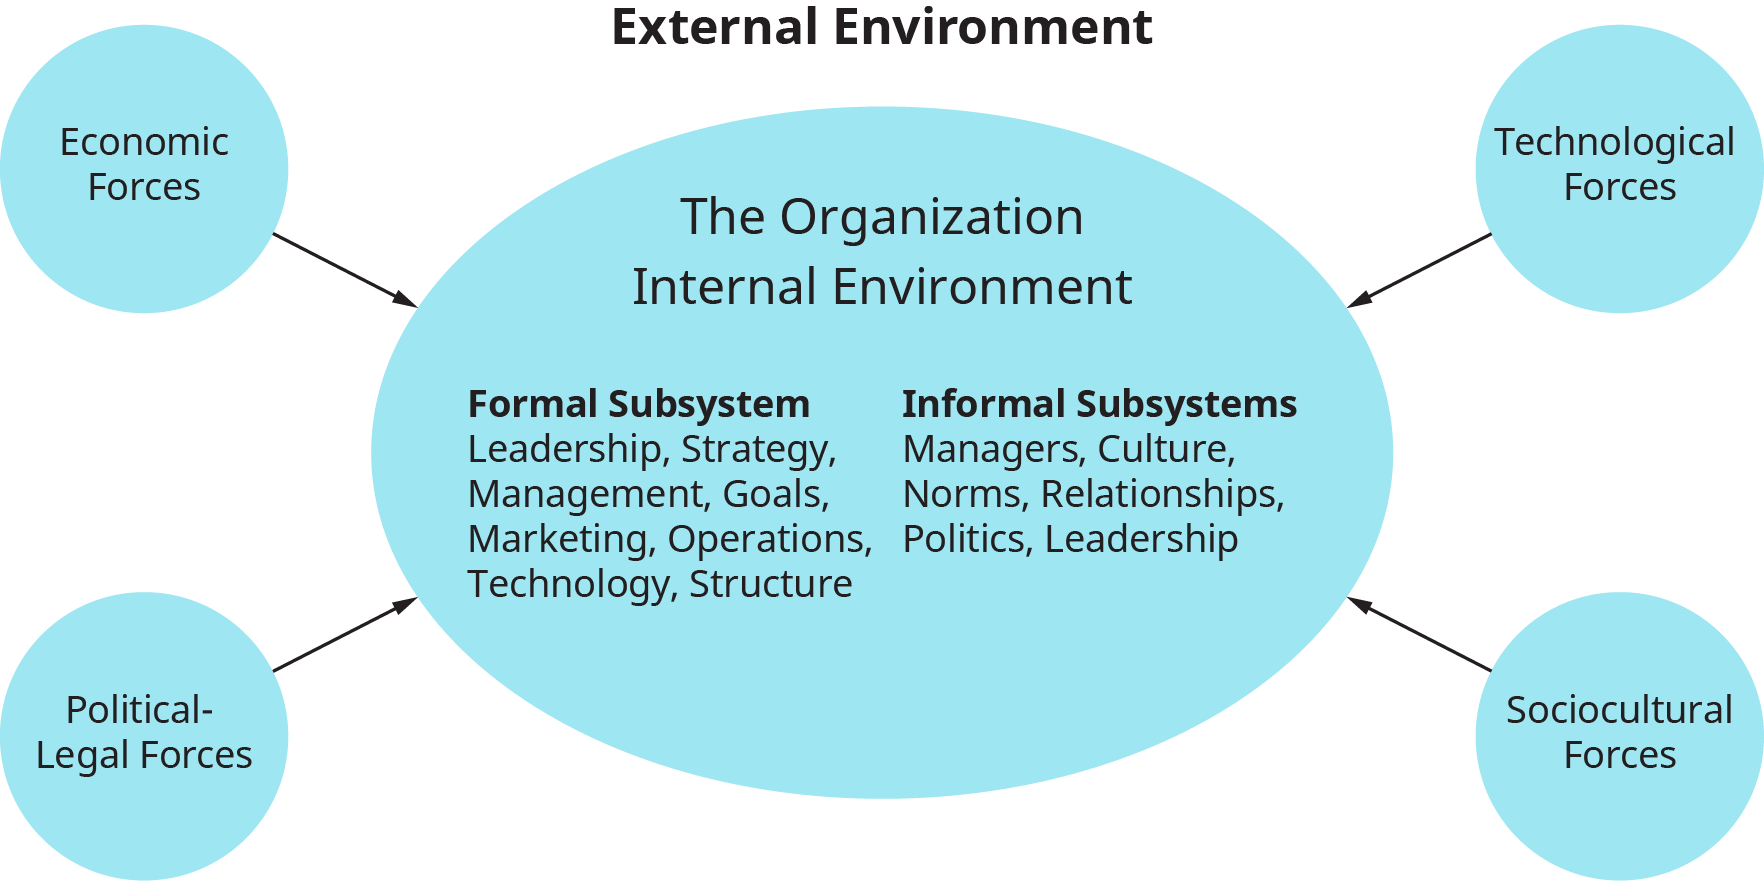 Un diagrama muestra los subsistemas del entorno interno de una organización y las fuerzas externas que la afectan.